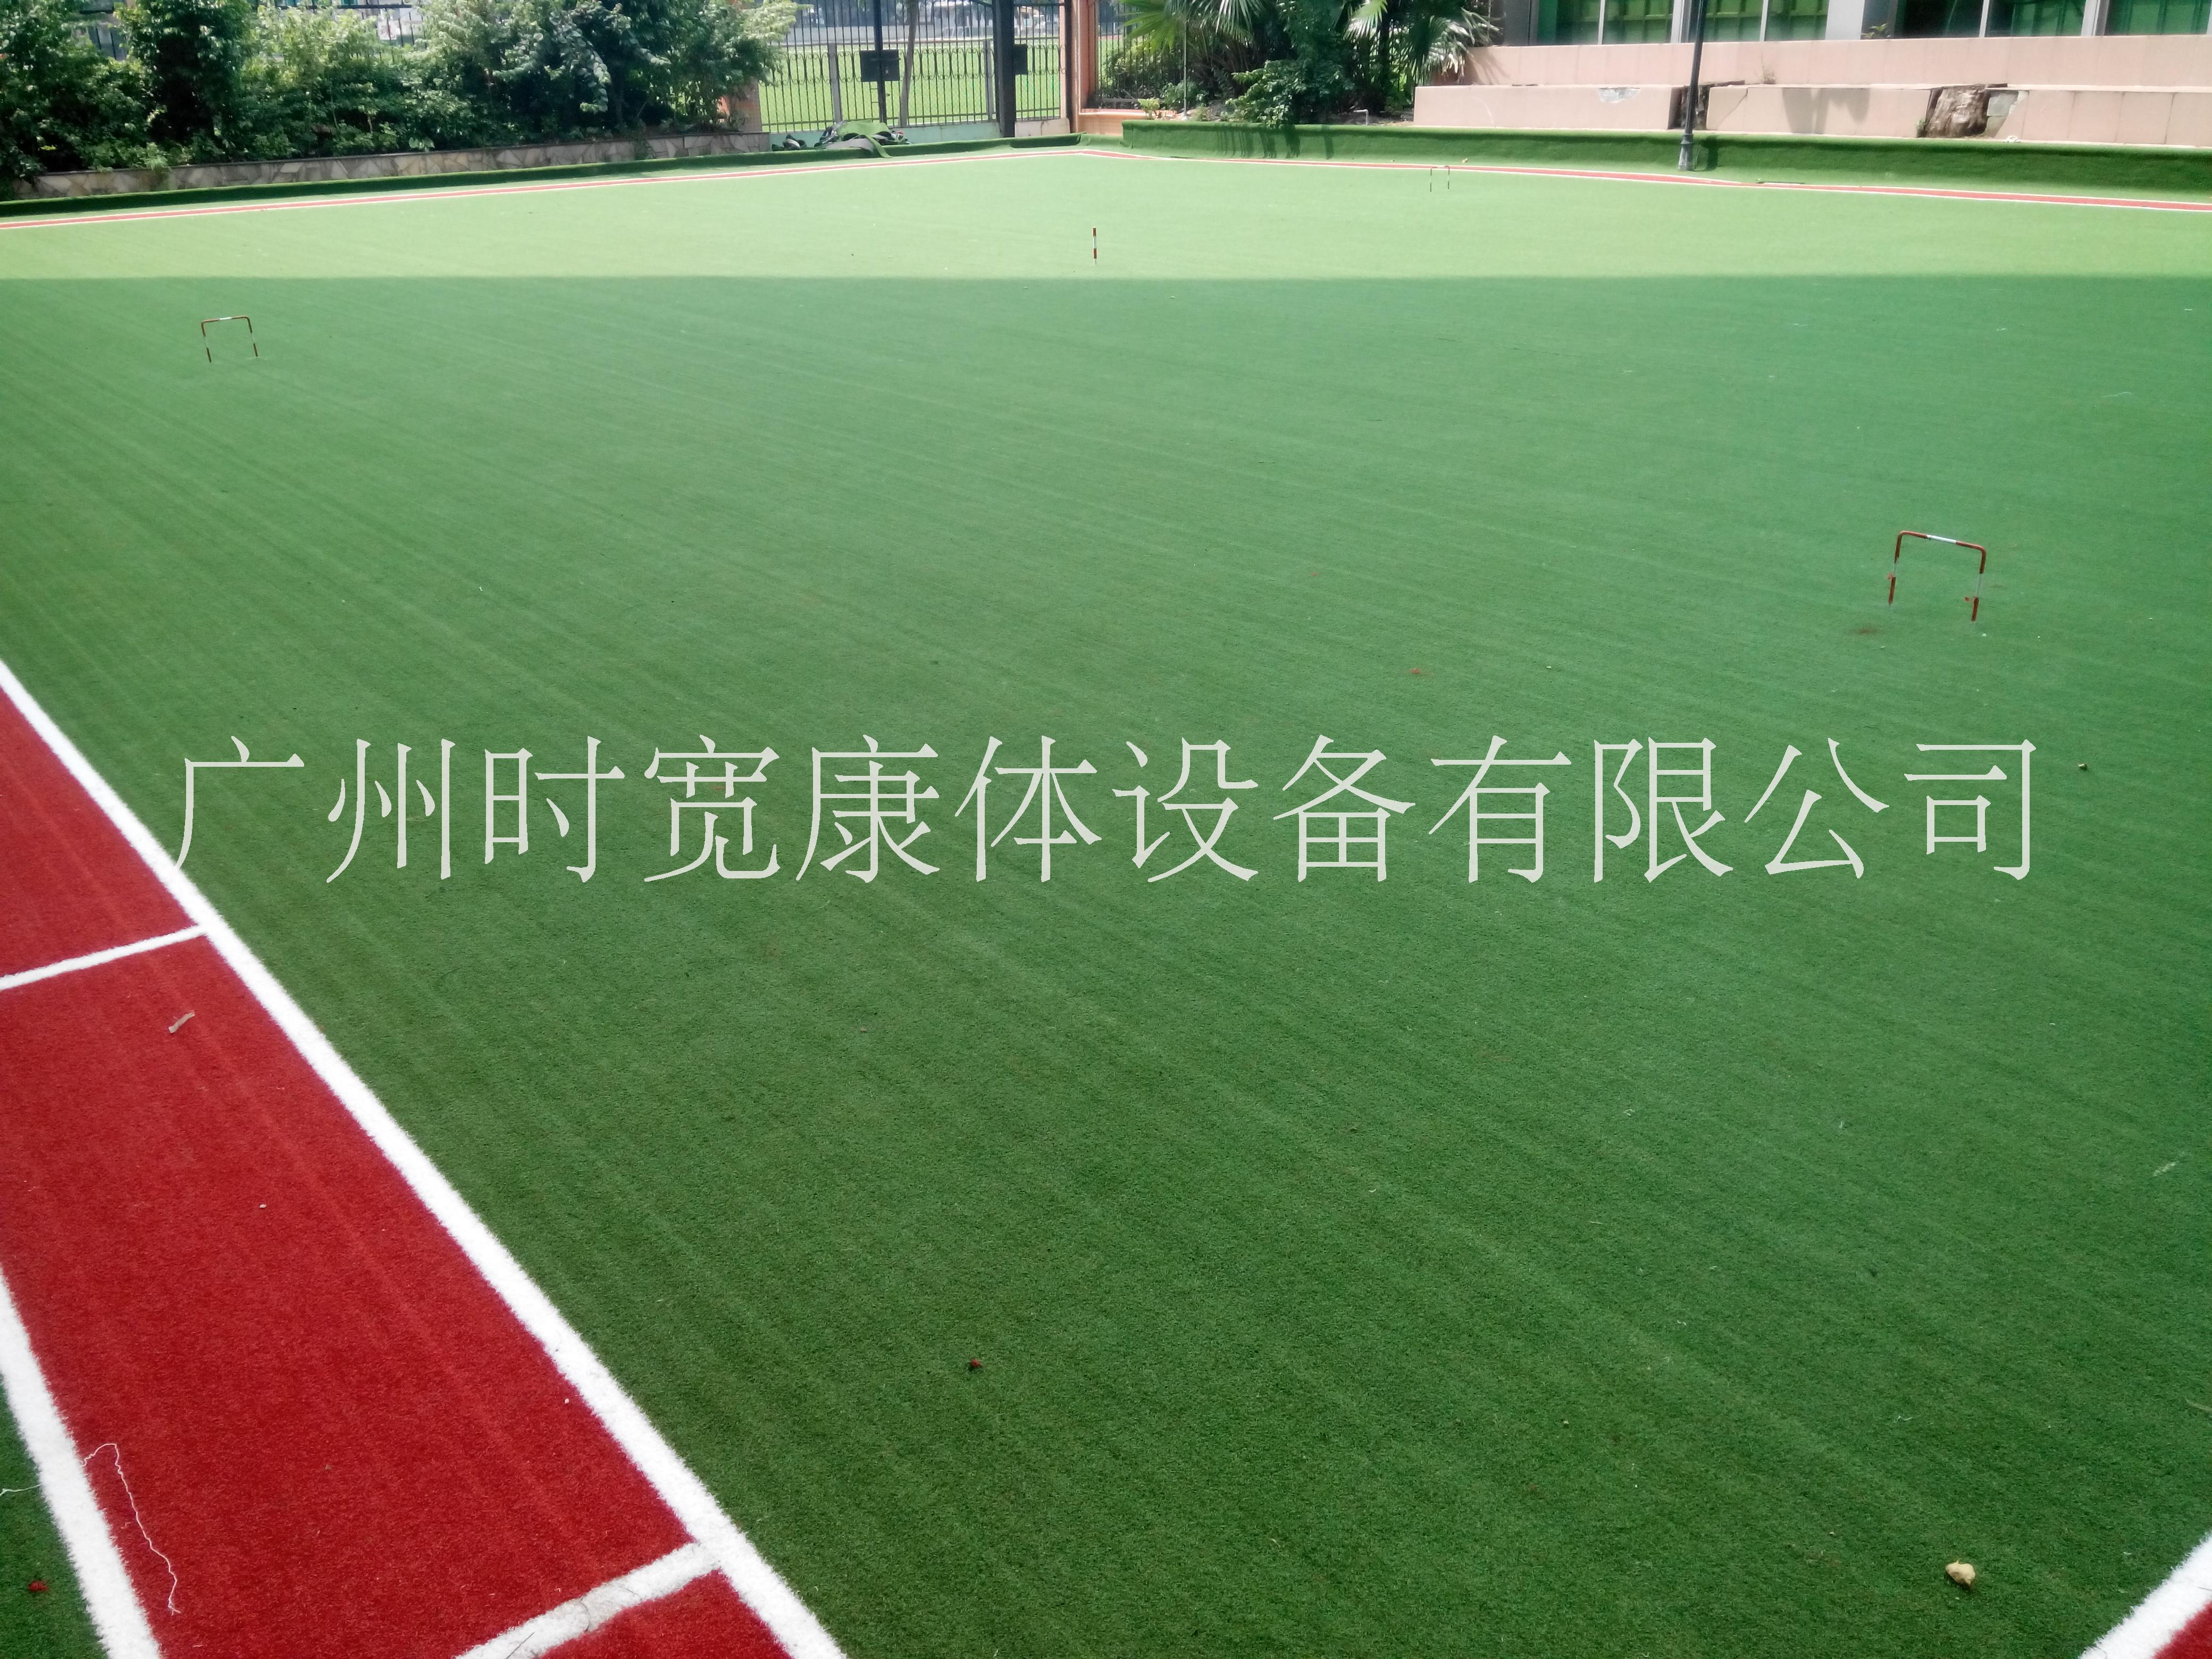 广州厂家直销时宽人造草坪人工草皮仿真草坪塑料草坪高尔夫球场门球场草坪图片